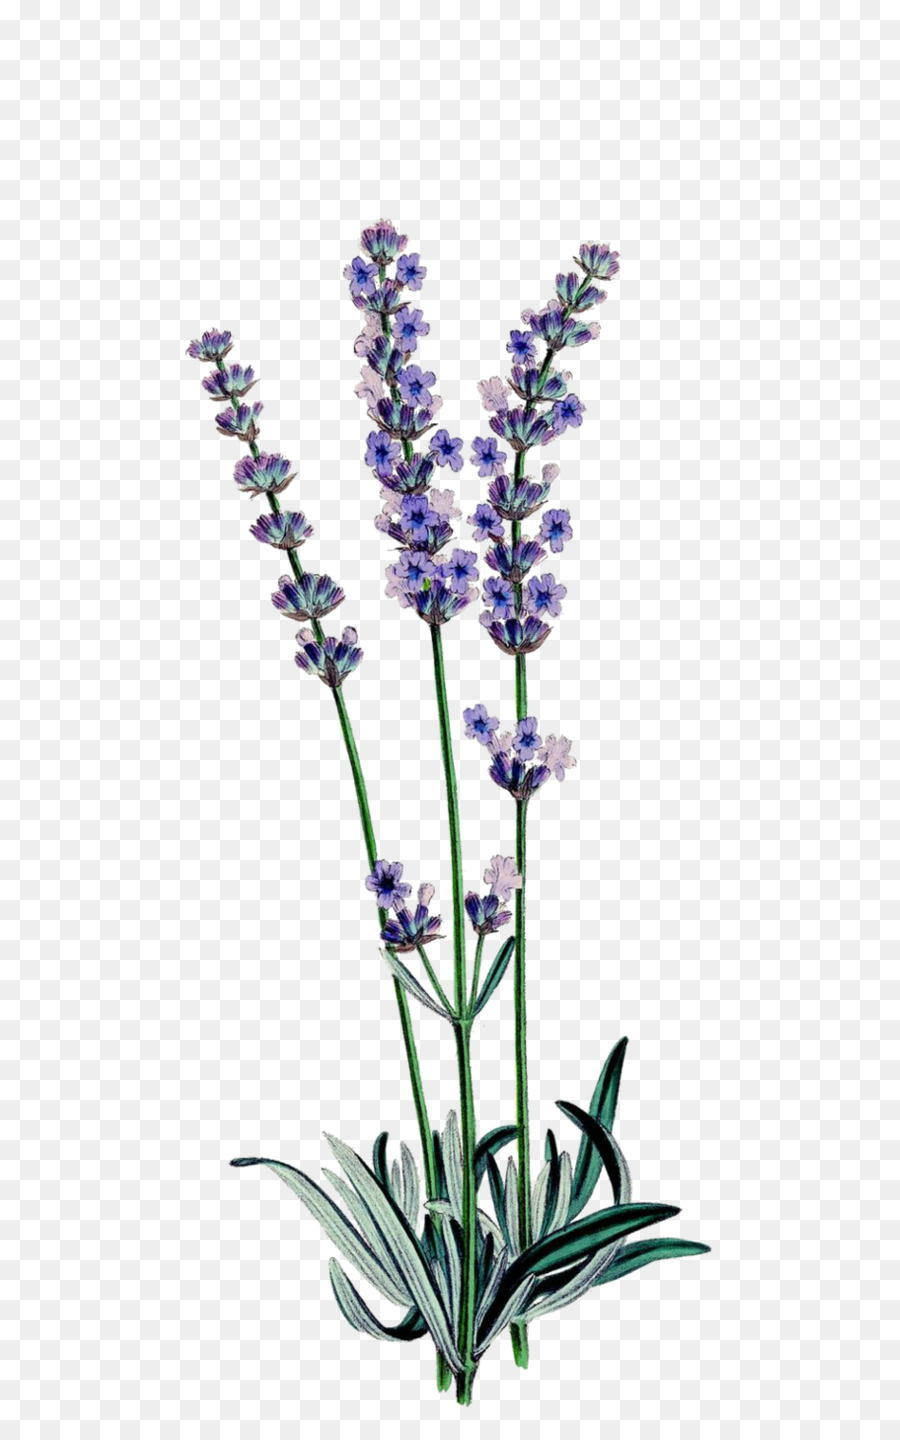 Englisch Lavendel botanische illustration Botanik Zeichnung Lavendel-öl - Lavendel